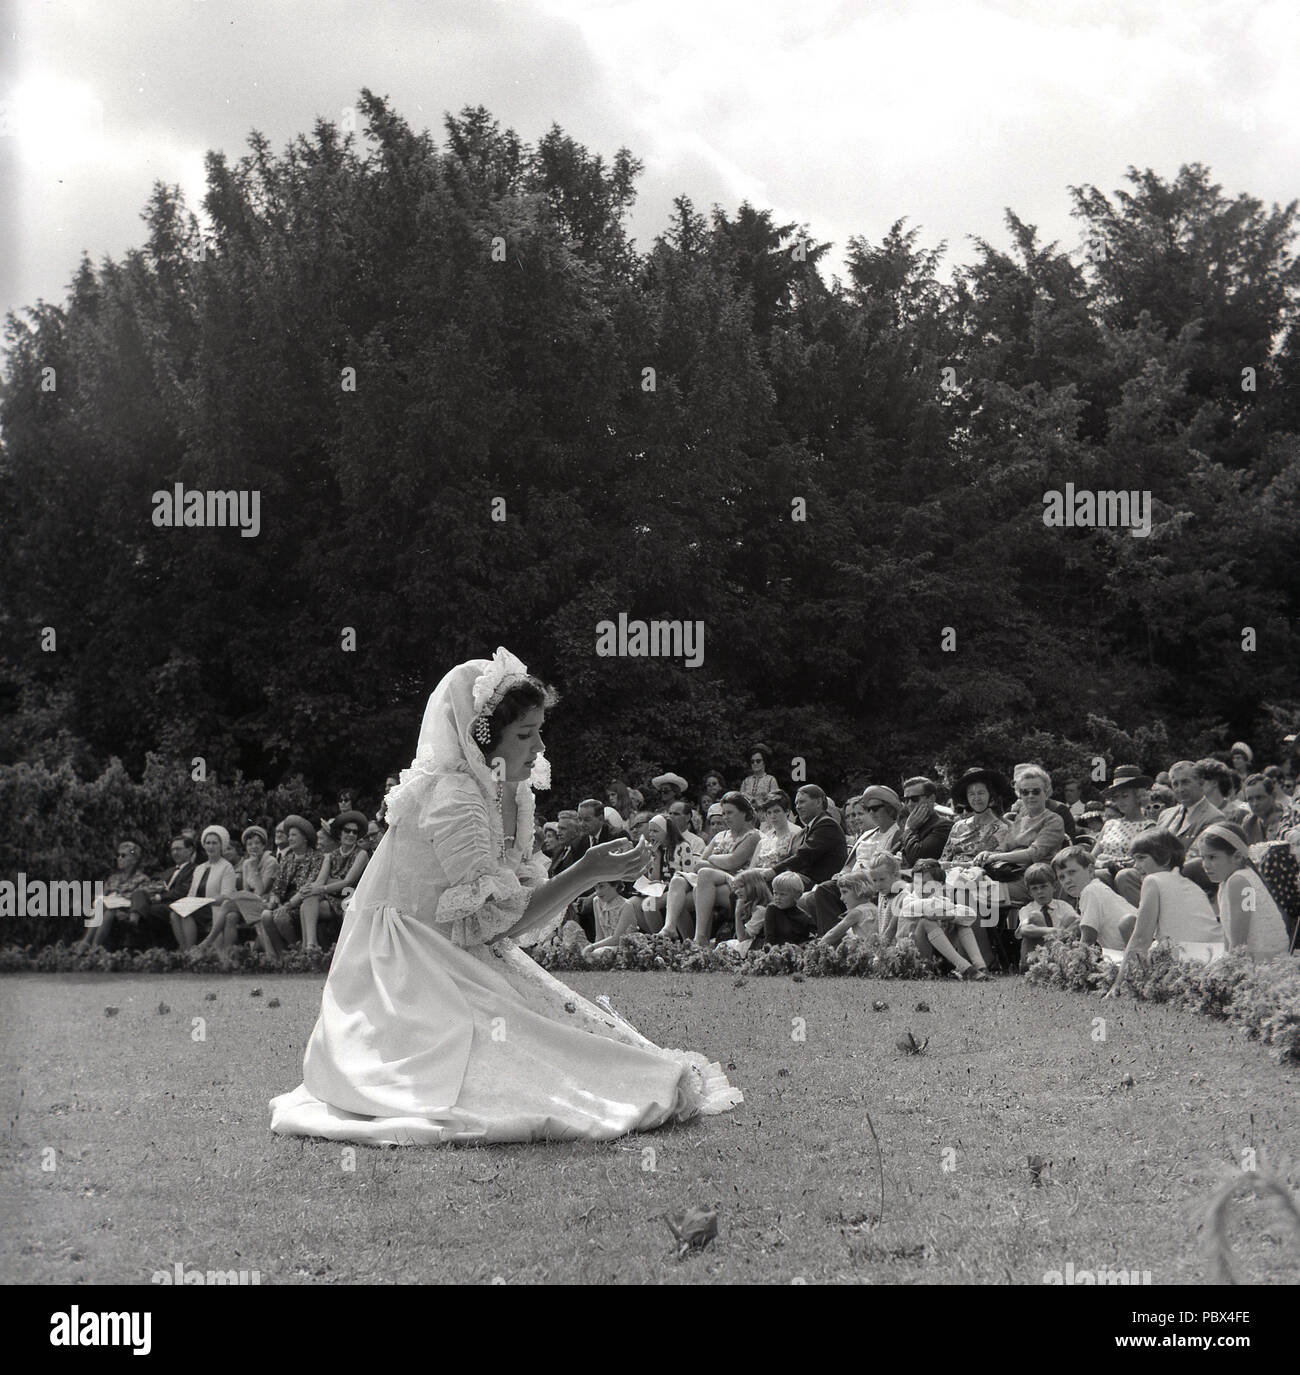 1964, Tring, arts de la scène une jeune fille en plein-air à l'extérieur devant un public assis dans l'enceinte de l'école Oasis) pour les arts de la scène, les arts de l'École d'origine. Banque D'Images